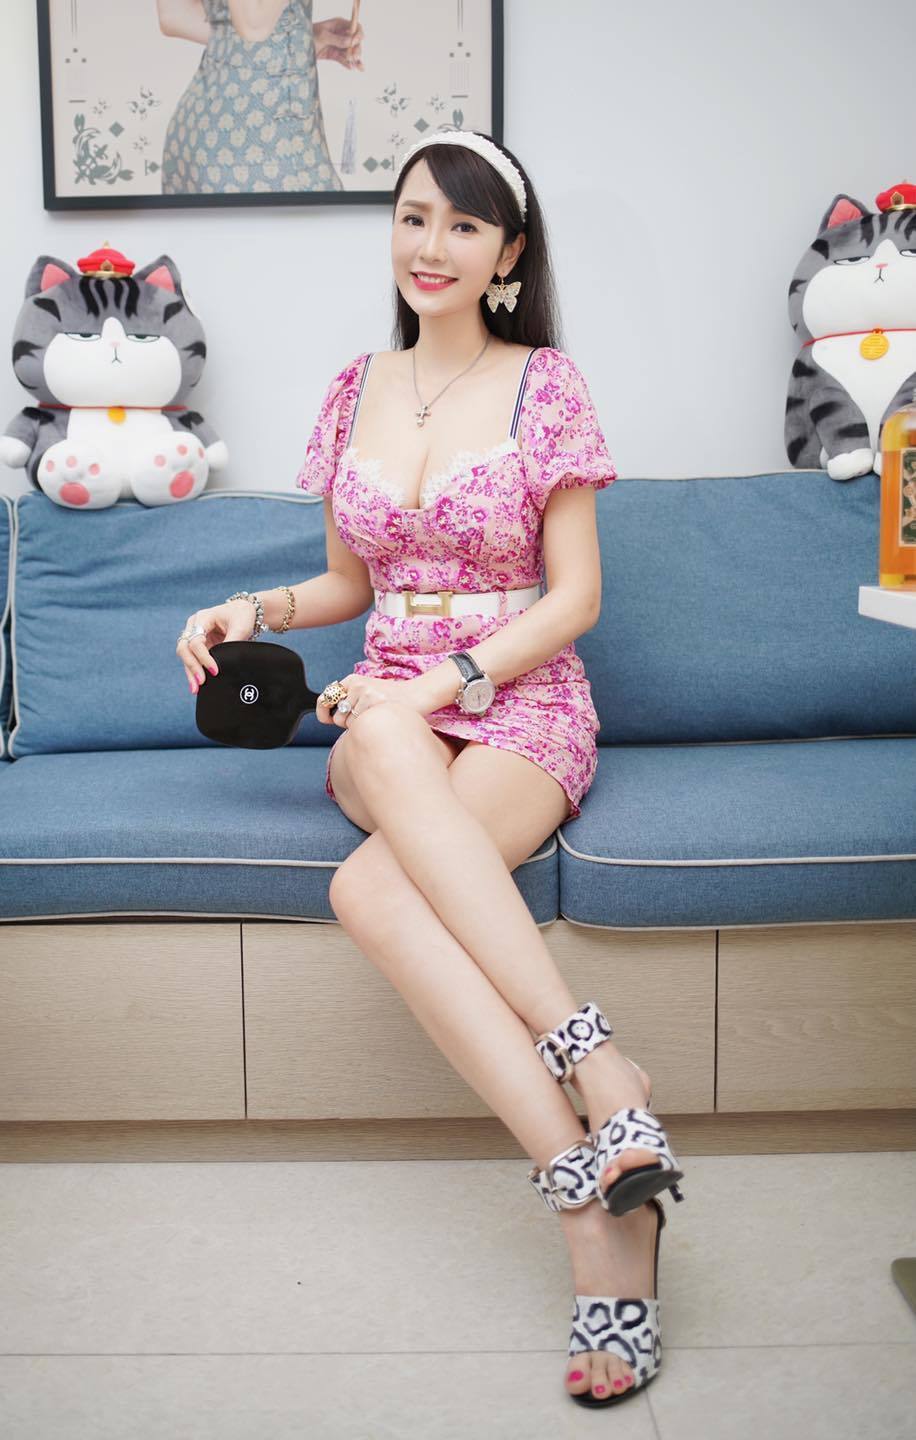 'Mỹ nhân nói dối' Helen Thanh Đào ở tuổi 43: Vẫn nóng bỏng như thủa 20, là CEO giàu có - Ảnh 3